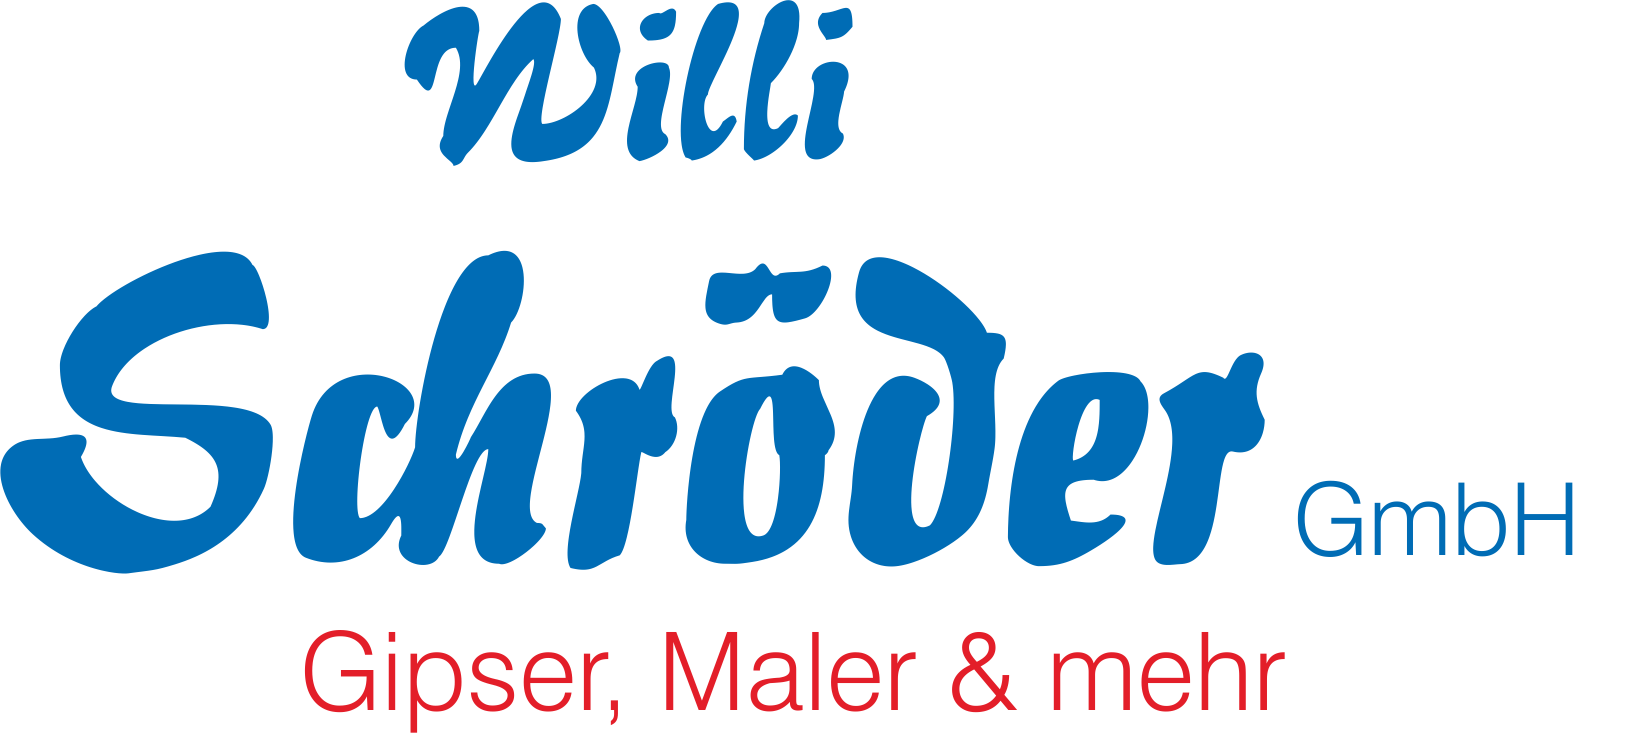 logo schroeder